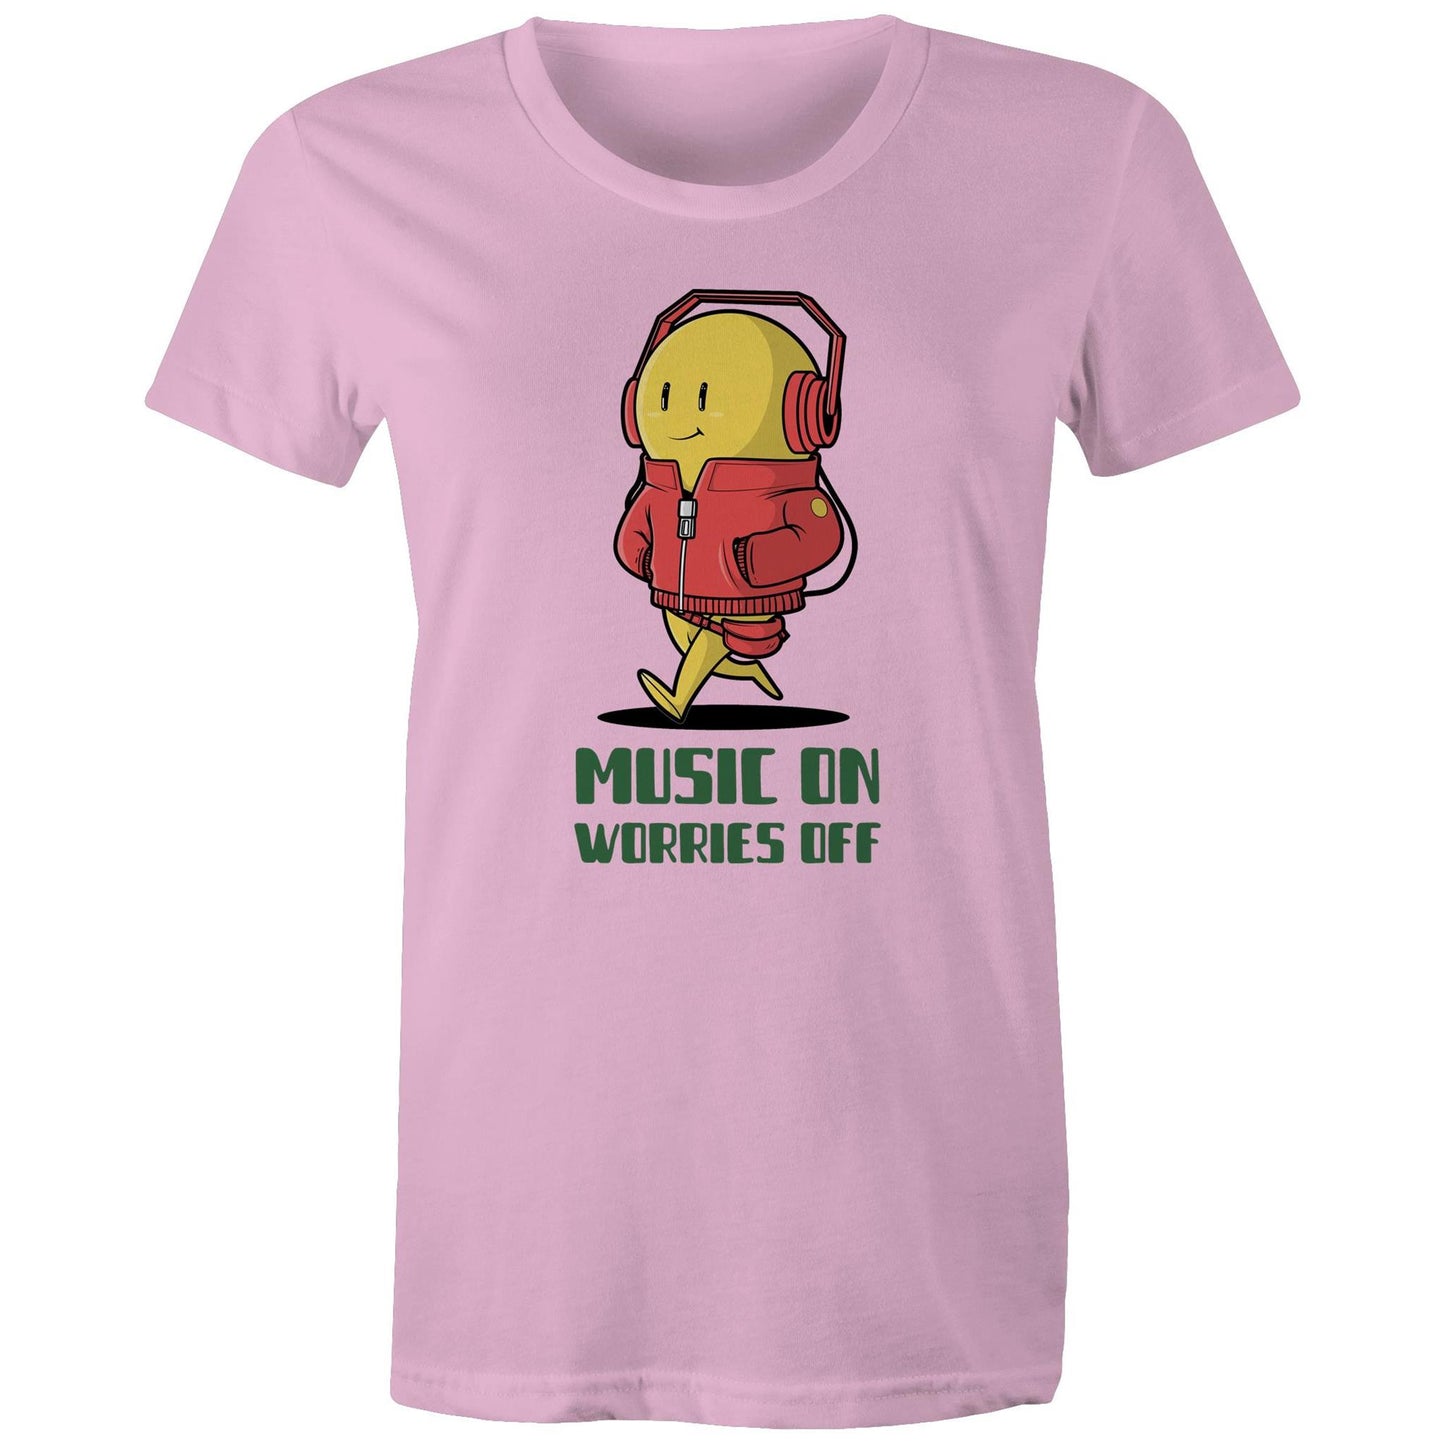 Music On, Worries Off - Womens T-shirt Pink Womens T-shirt Music